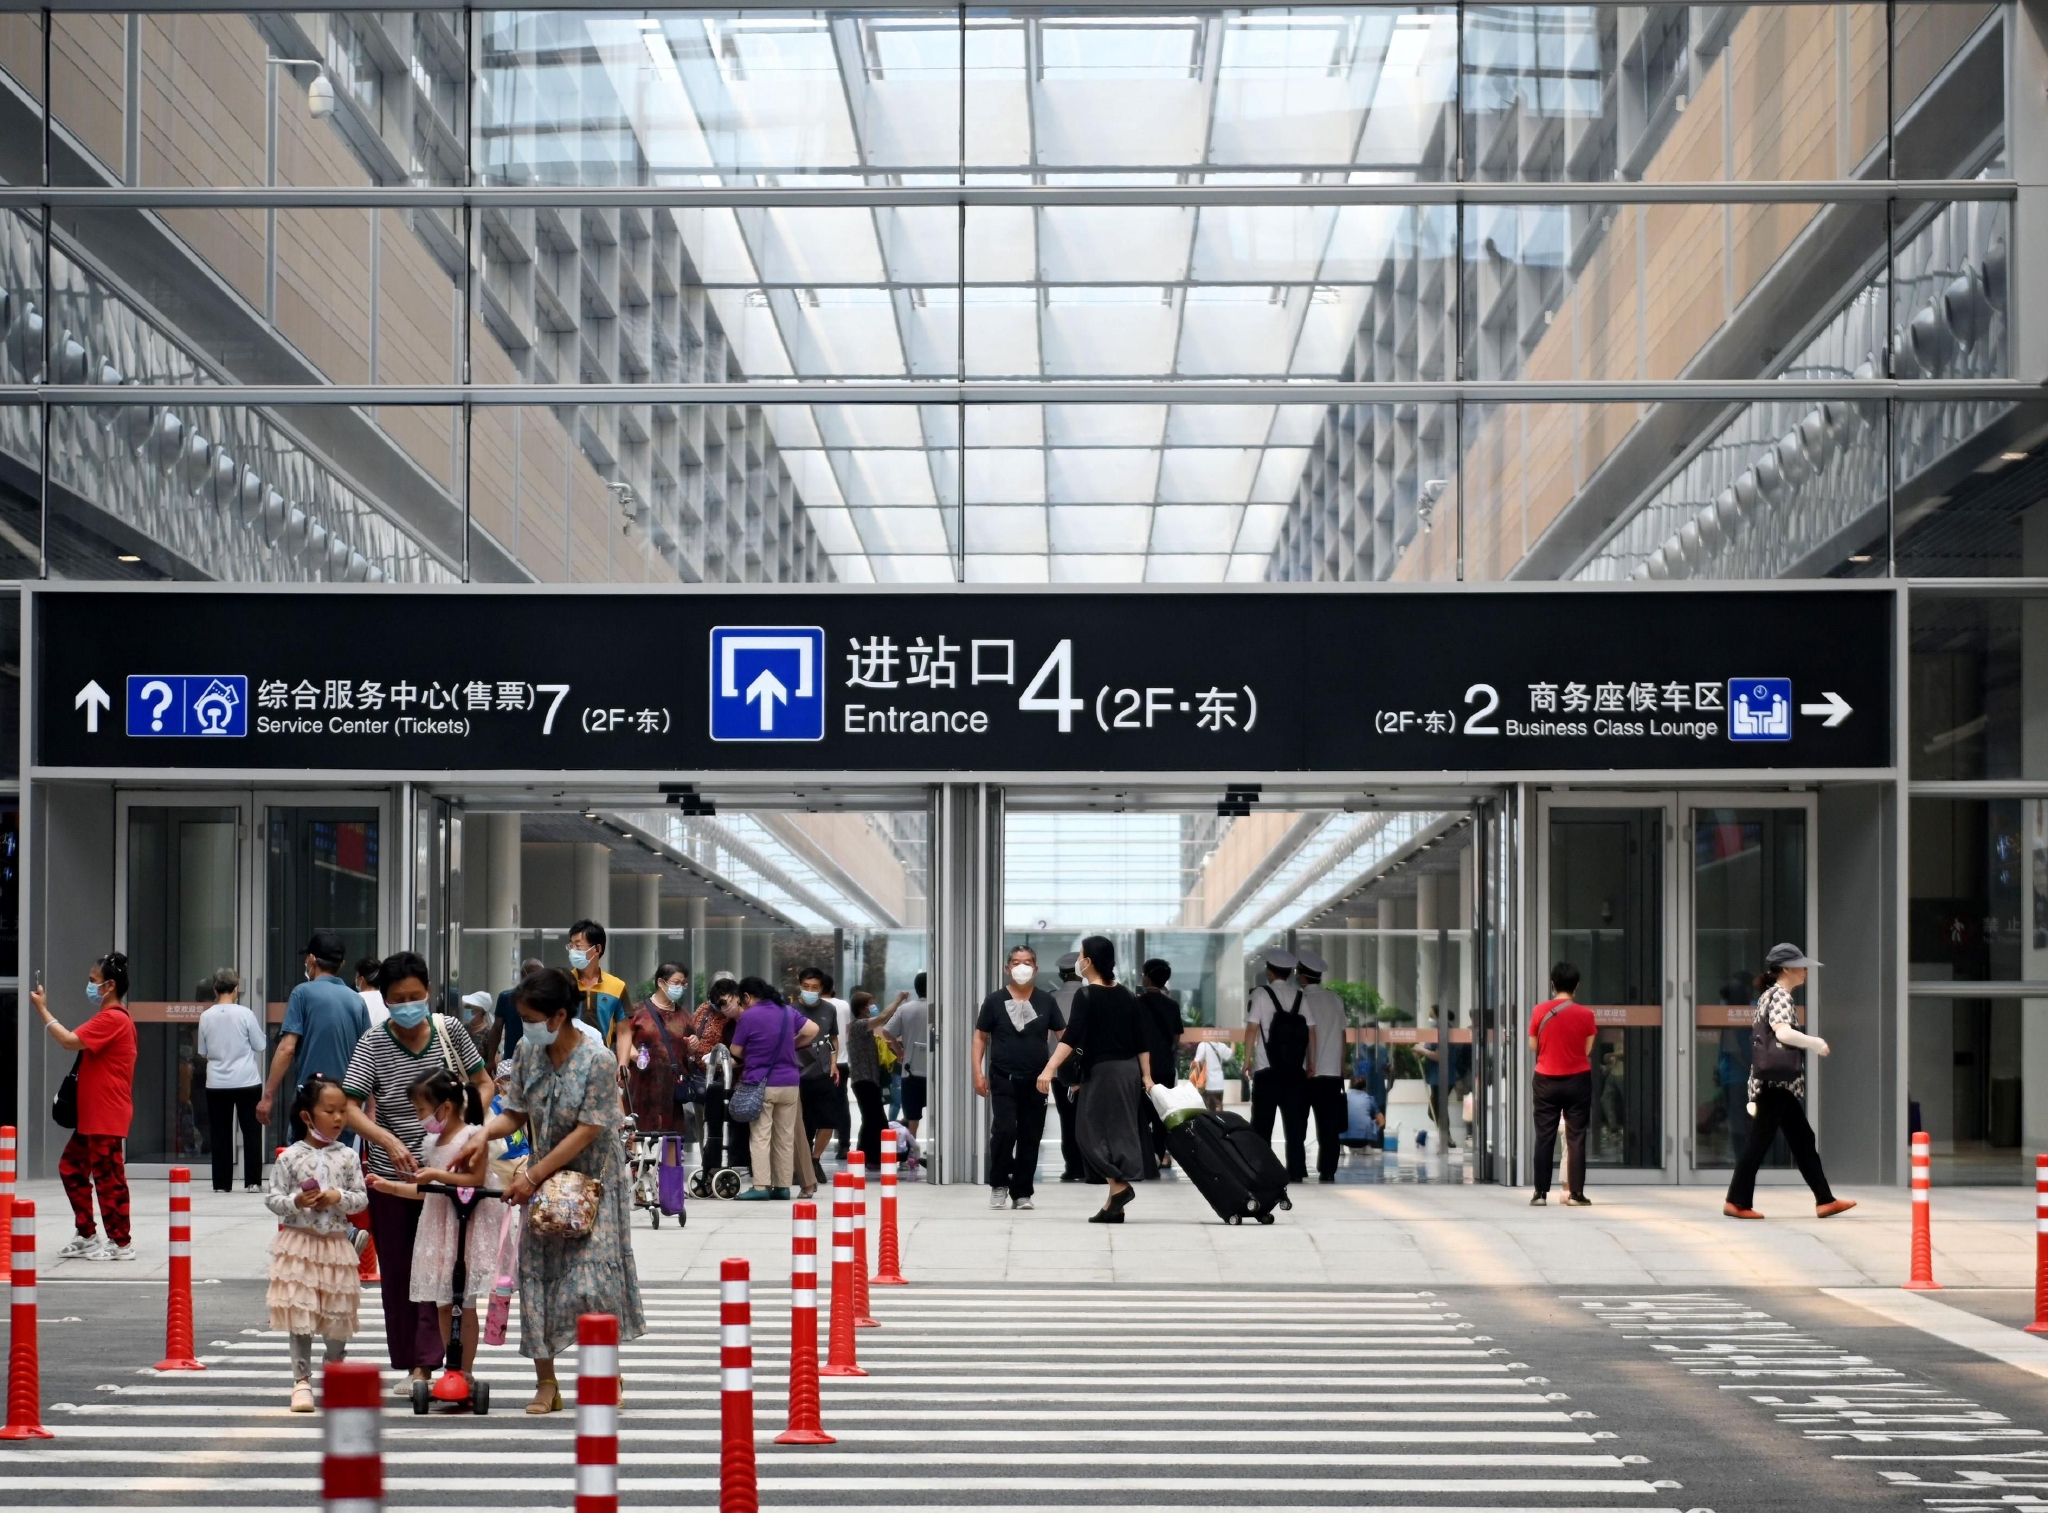 北京丰台站共有5个进站口方便人们进站乘车。董芳忠/摄